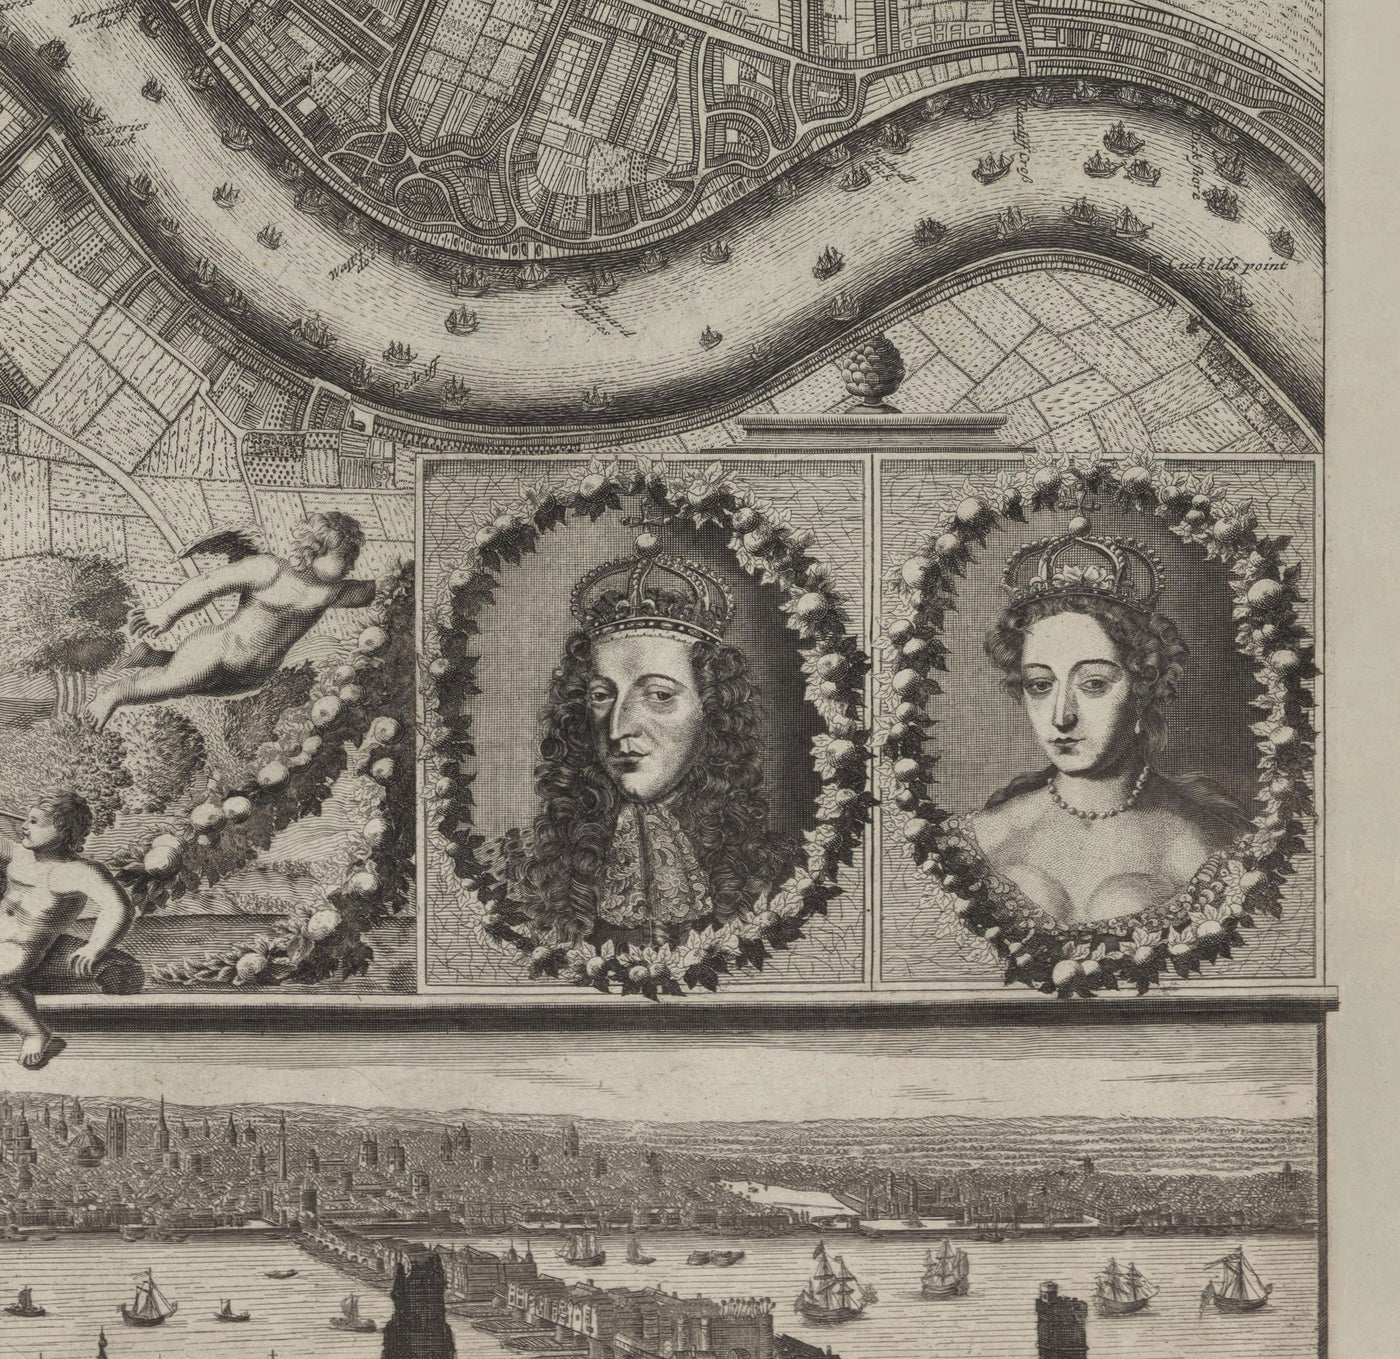 Seltene alte Karte von London im Jahr 1690 von Joannes de Ram